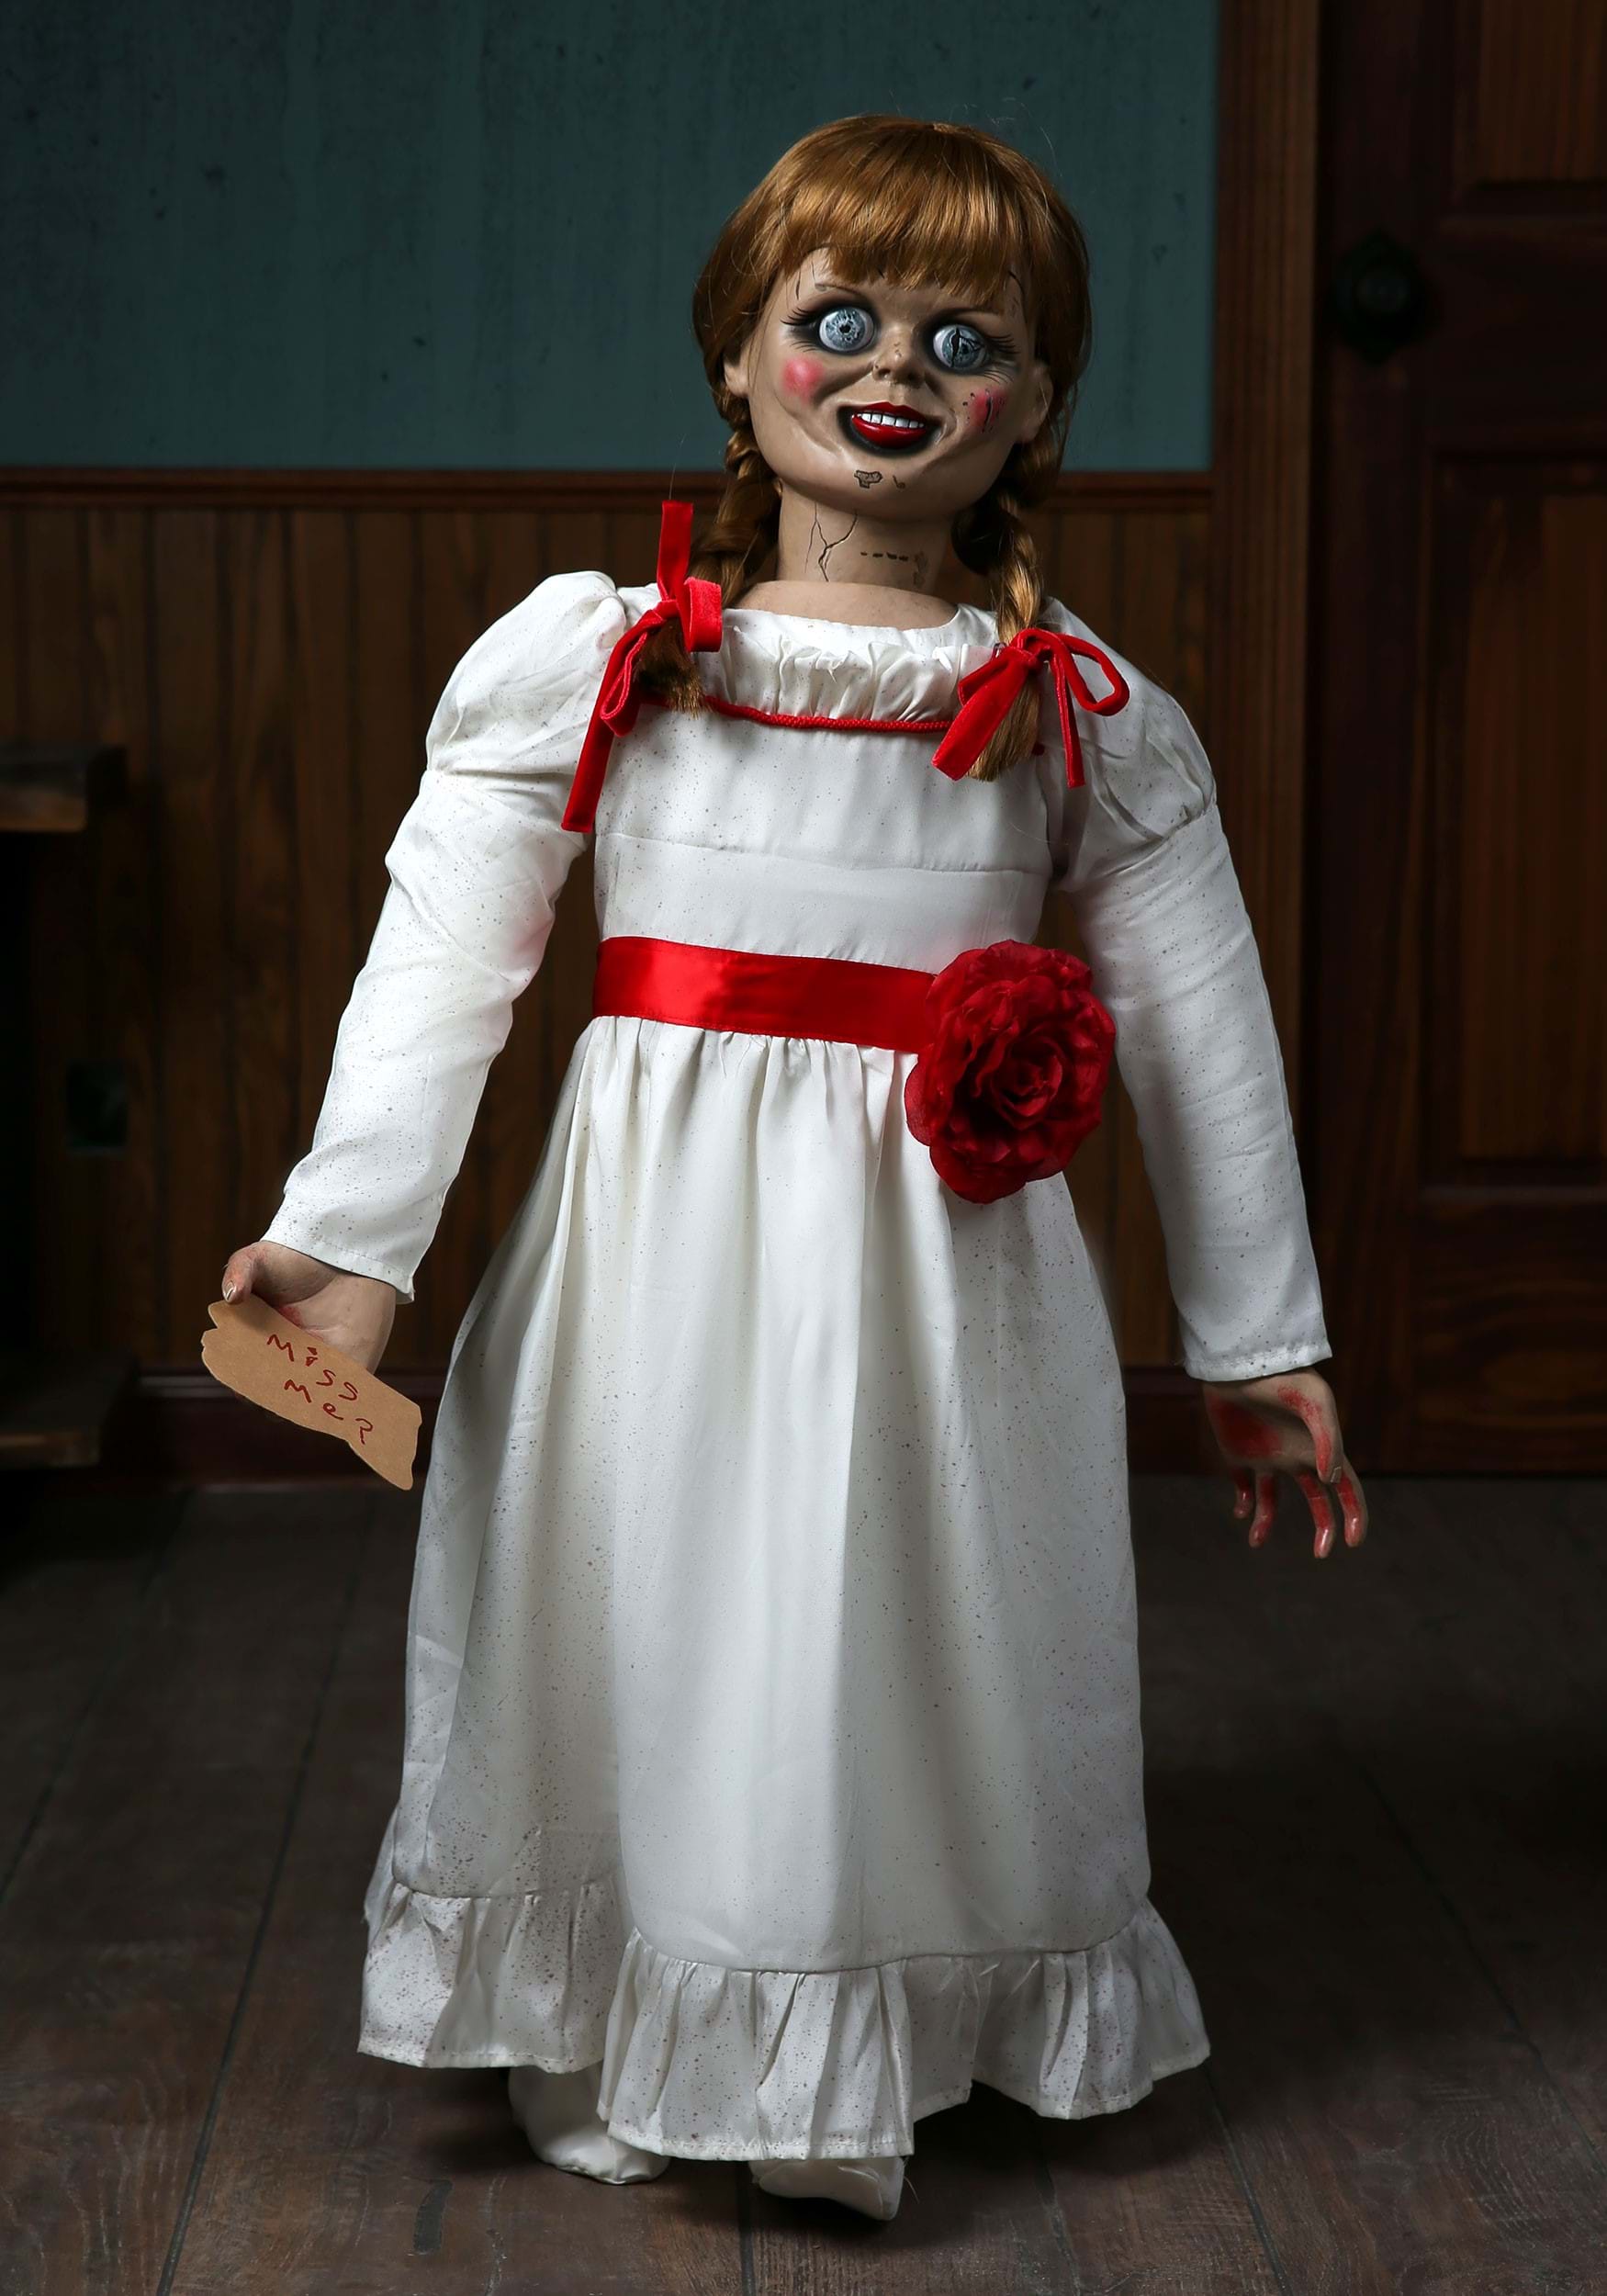 El accesorio de muñecas Annabelle de los coleccionistas conjuros Multicolor Colombia